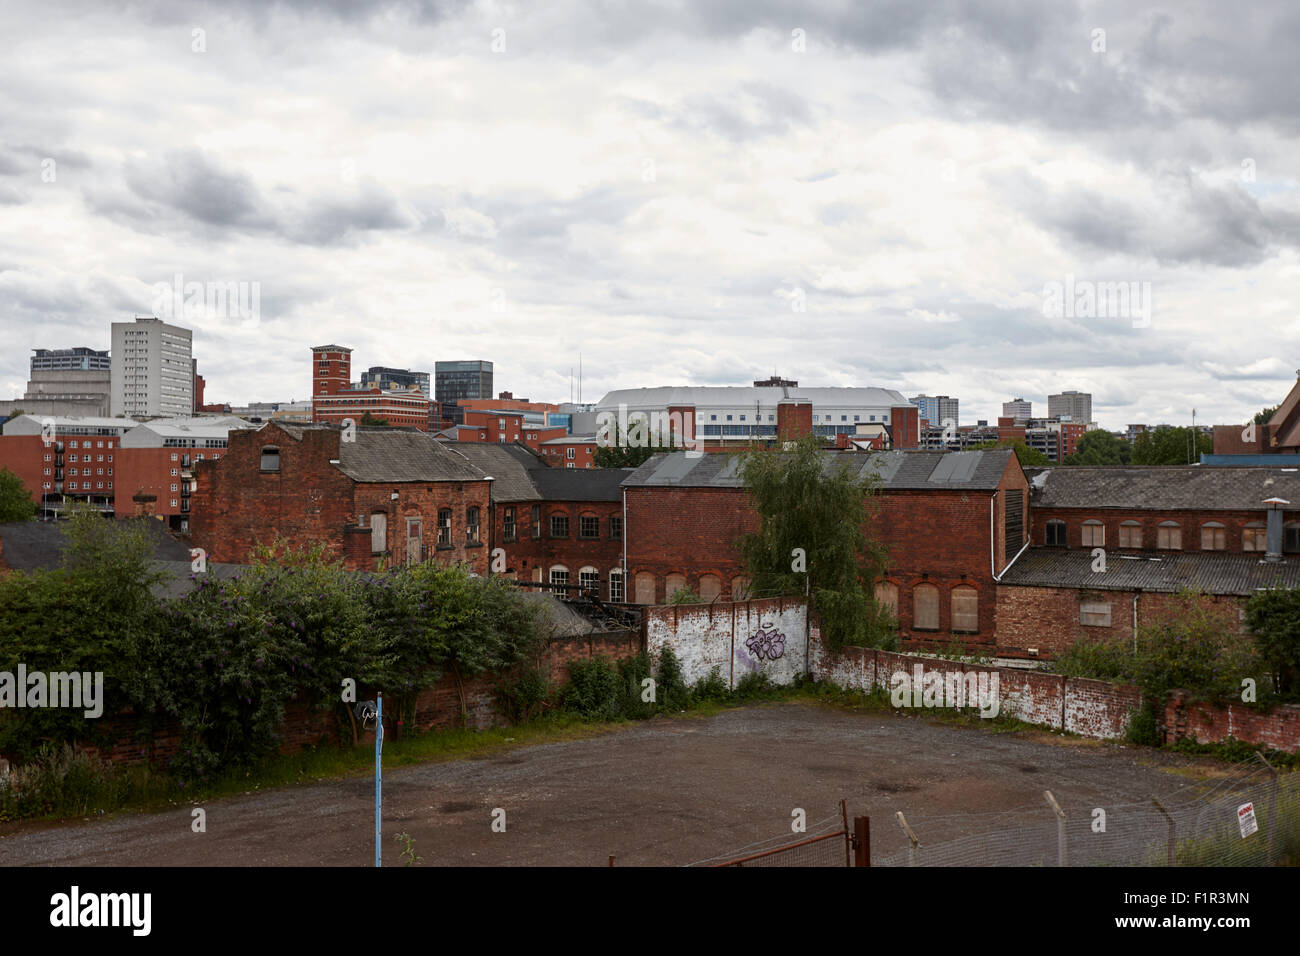 Vue du centre-ville de Birmingham dans divers domaine brun et de vieux bâtiments abandonnés UK Banque D'Images